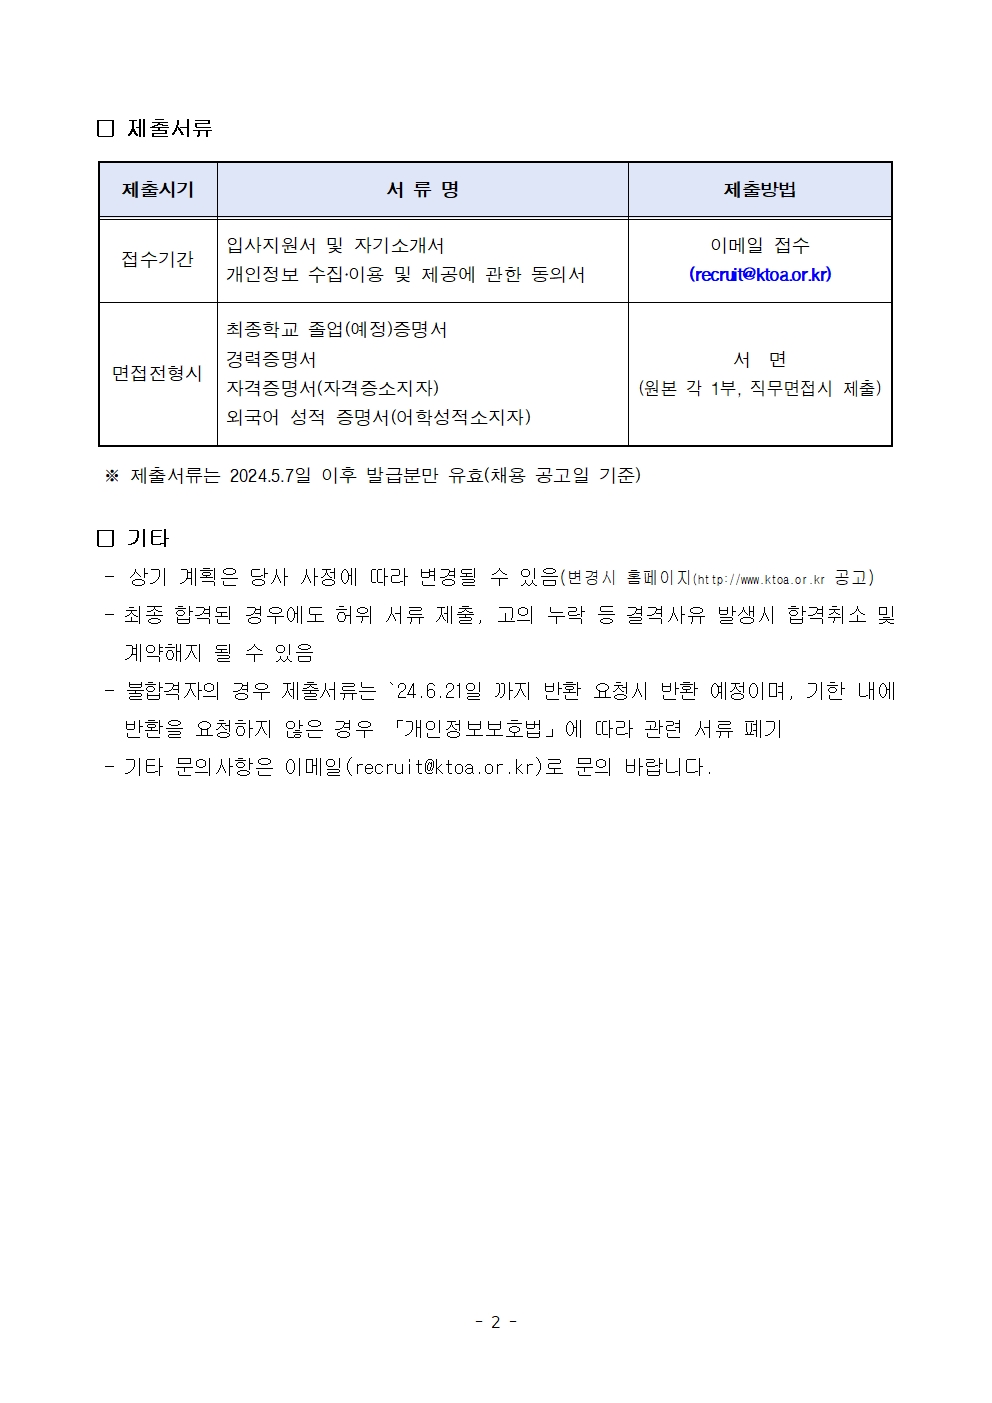 (사)한국통신사업자연합회 일반직(경력) 채용공고 2page